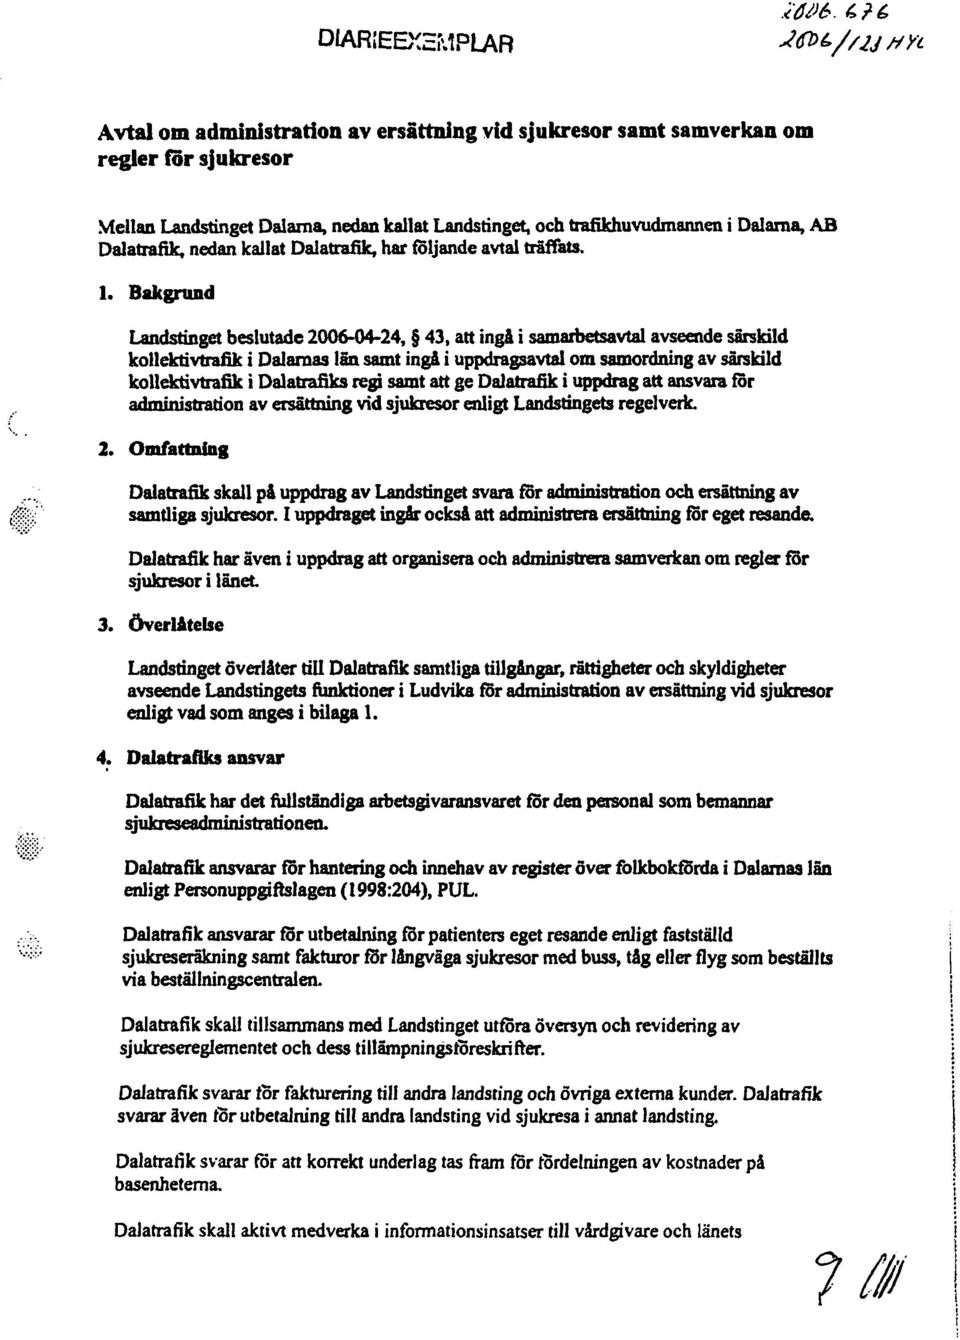 Bakgnmd Landstinget beslutade 2006-04-24, 43, att ingl i samarbetsavtal avseende särskild kollektivtrafik i Dalarnas län samt inga i uppdragsavtal om samordning av särskild kollektivtrafik i